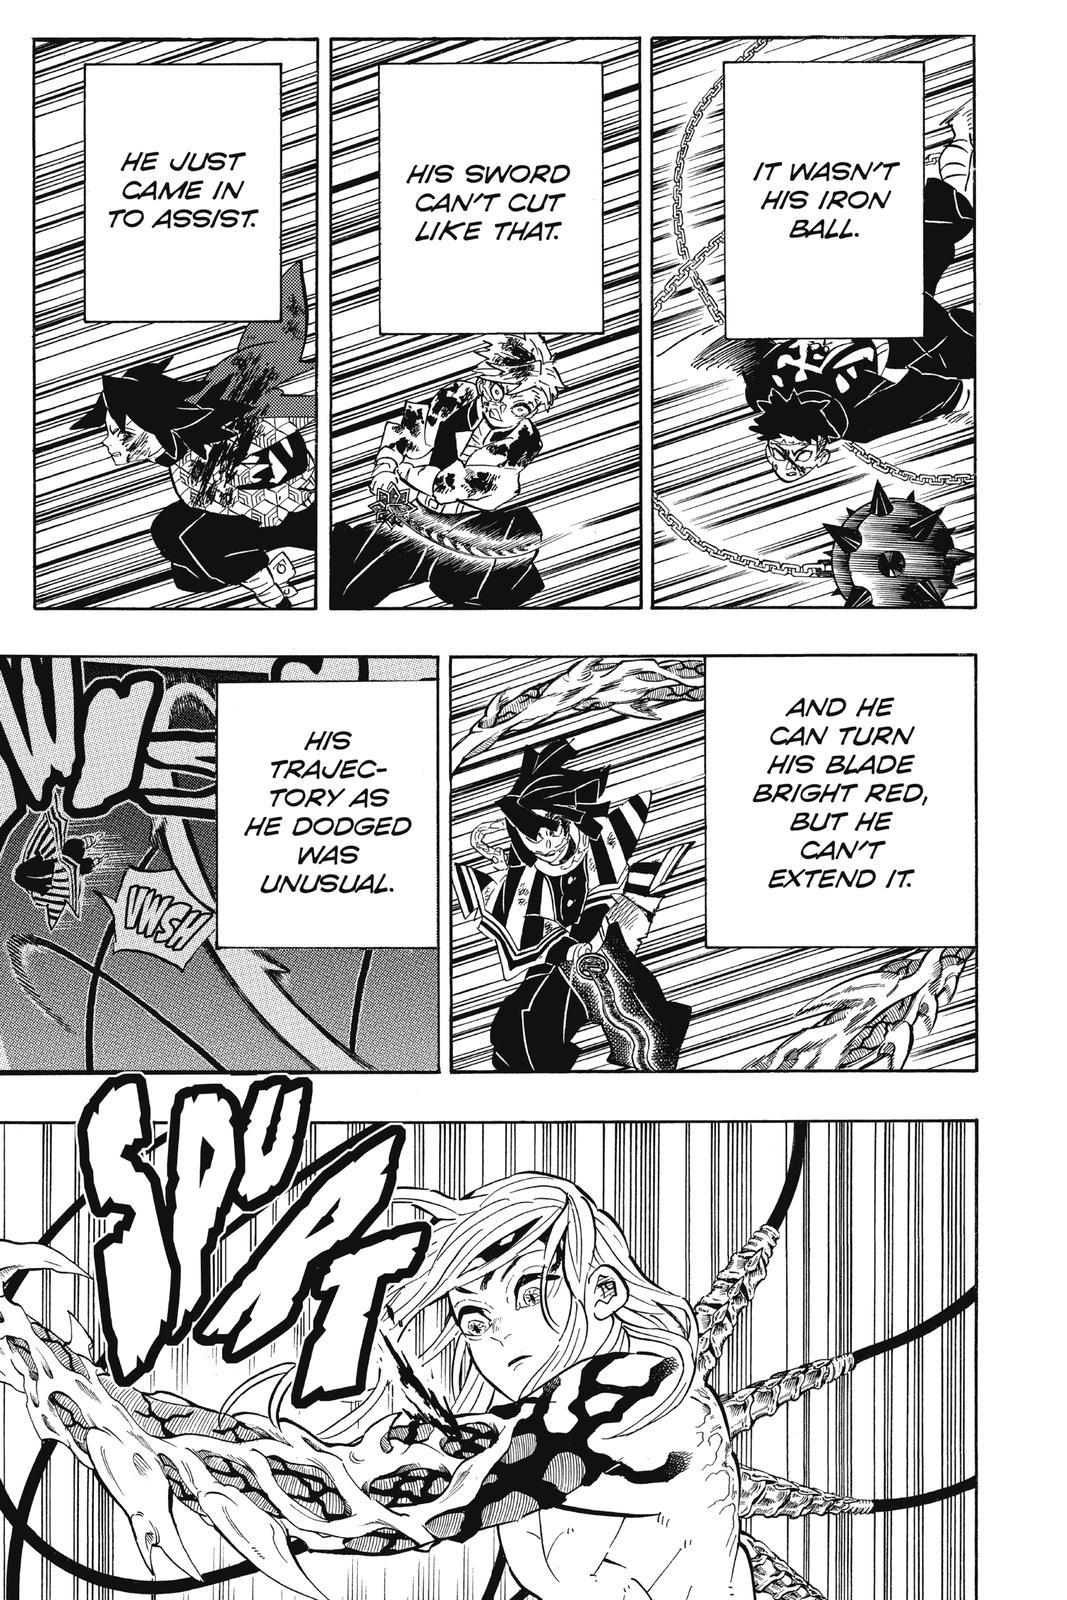 Demon Slayer Manga Manga Chapter - 190 - image 5